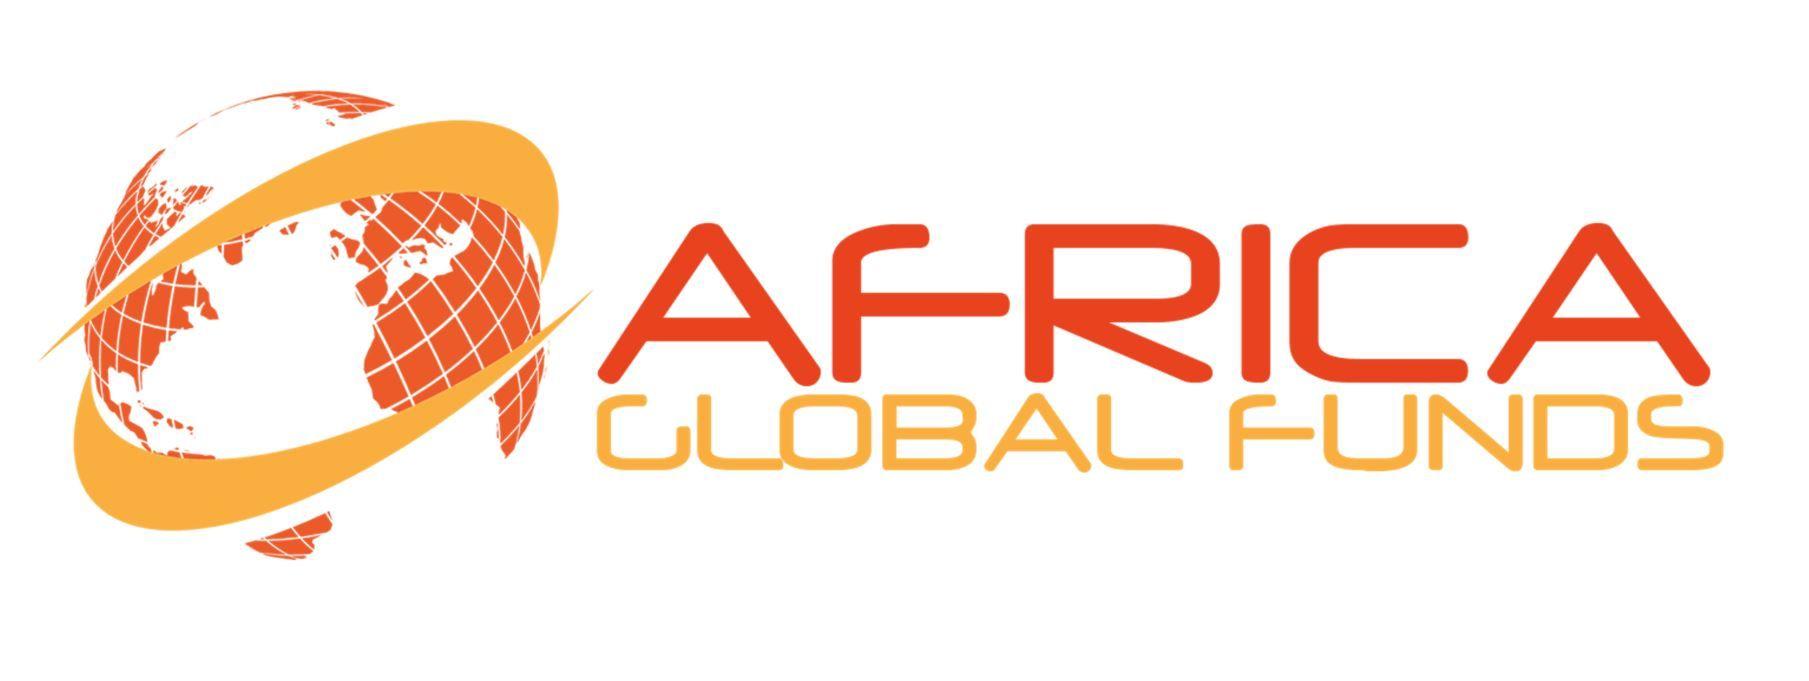 Africa Global Logo - Media Partner Archives